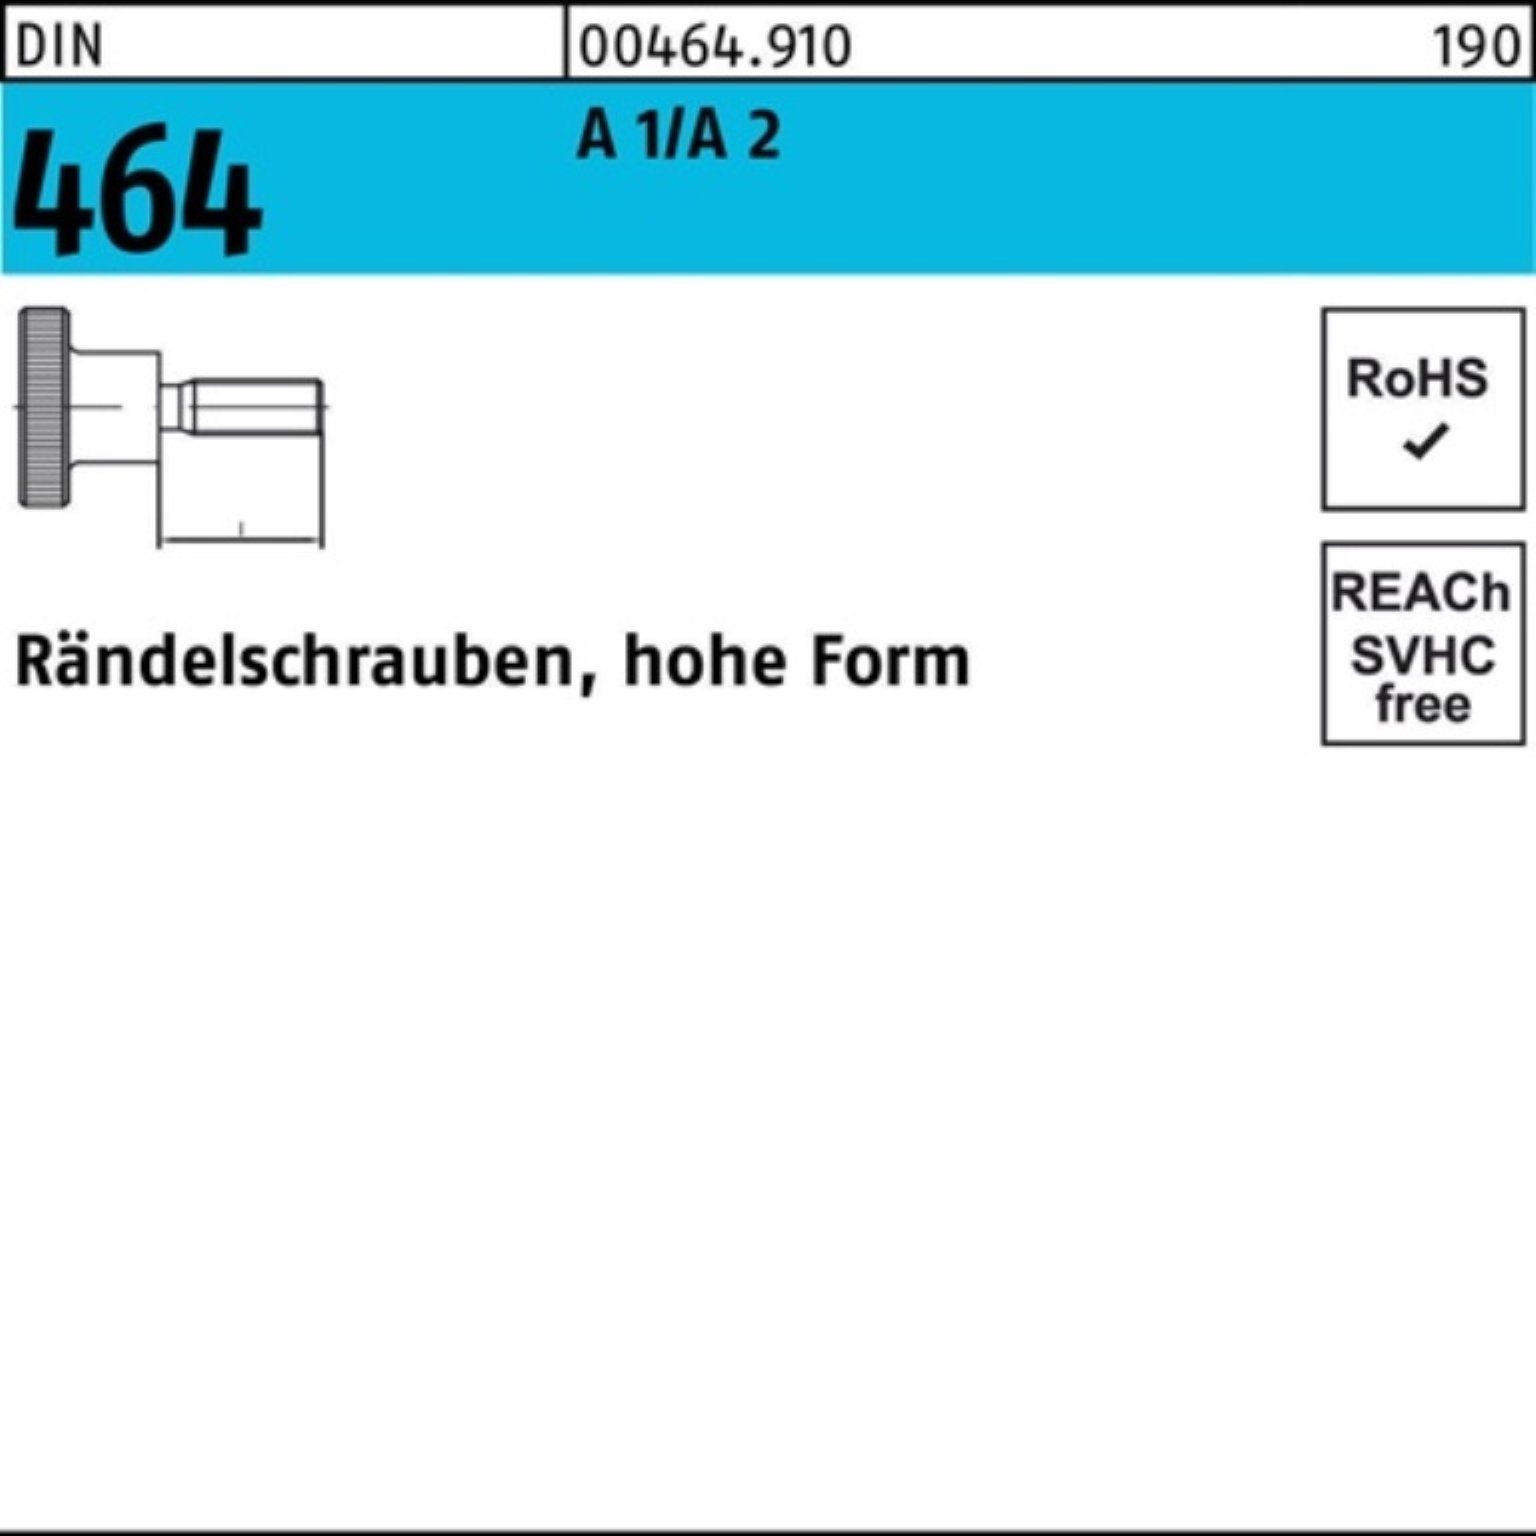 Reyher Schraube 100er Pack Rändelschraube FormM6x DIN 25 2 D 464 10 1/A A Stück hohe